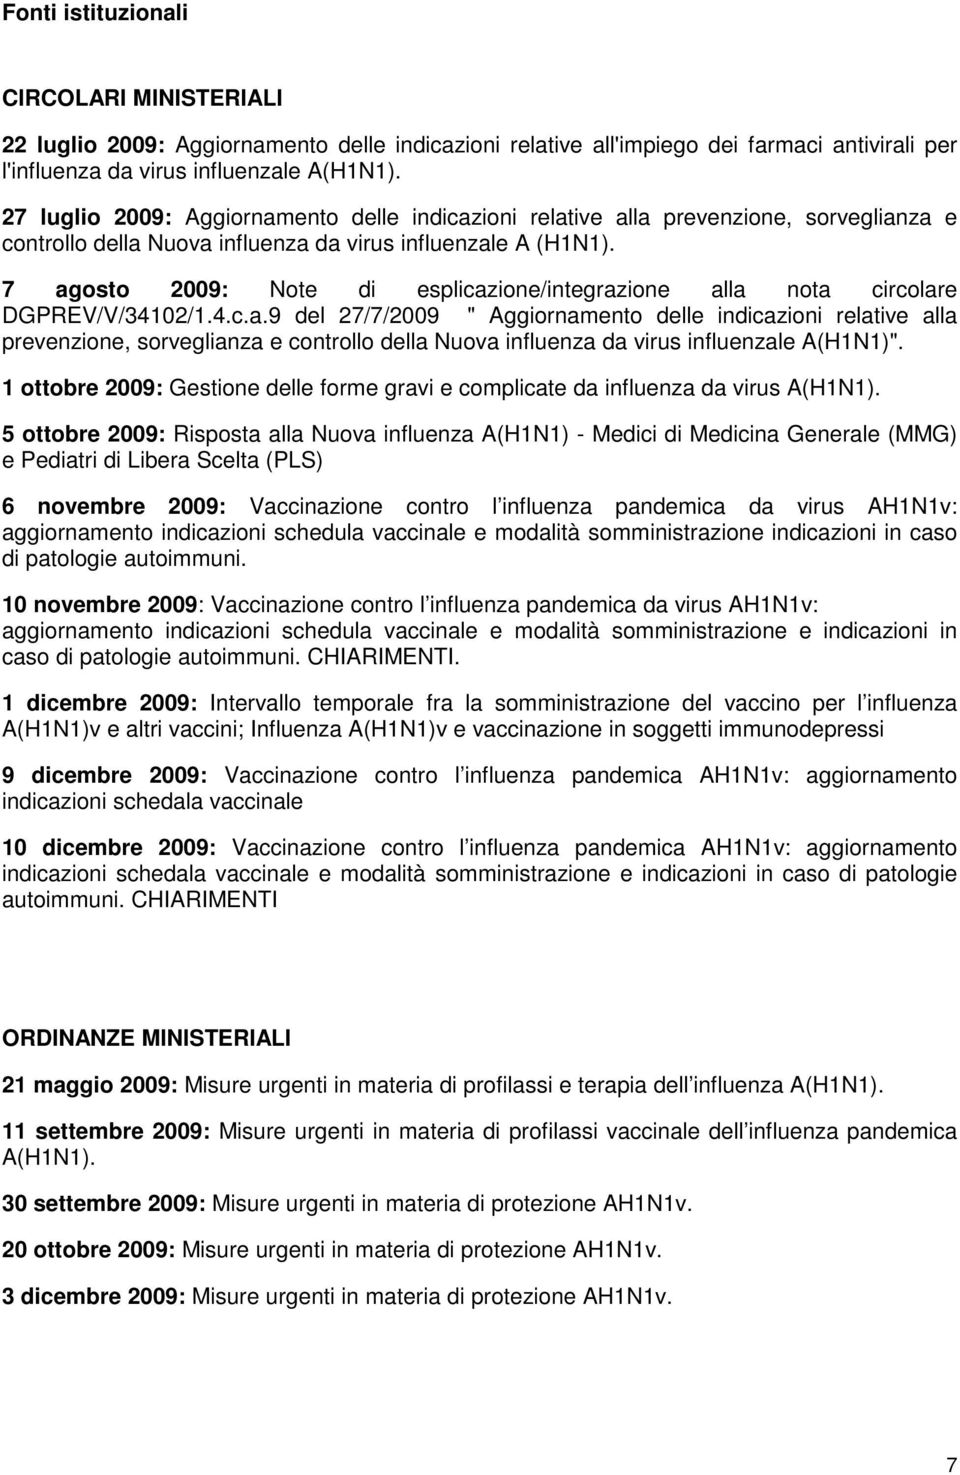 7 agosto 2009: Note di esplicazione/integrazione alla nota circolare DGPREV/V/34102/1.4.c.a.9 del 27/7/2009 " Aggiornamento delle indicazioni relative alla prevenzione, sorveglianza e controllo della Nuova influenza da virus influenzale A(H1N1)".